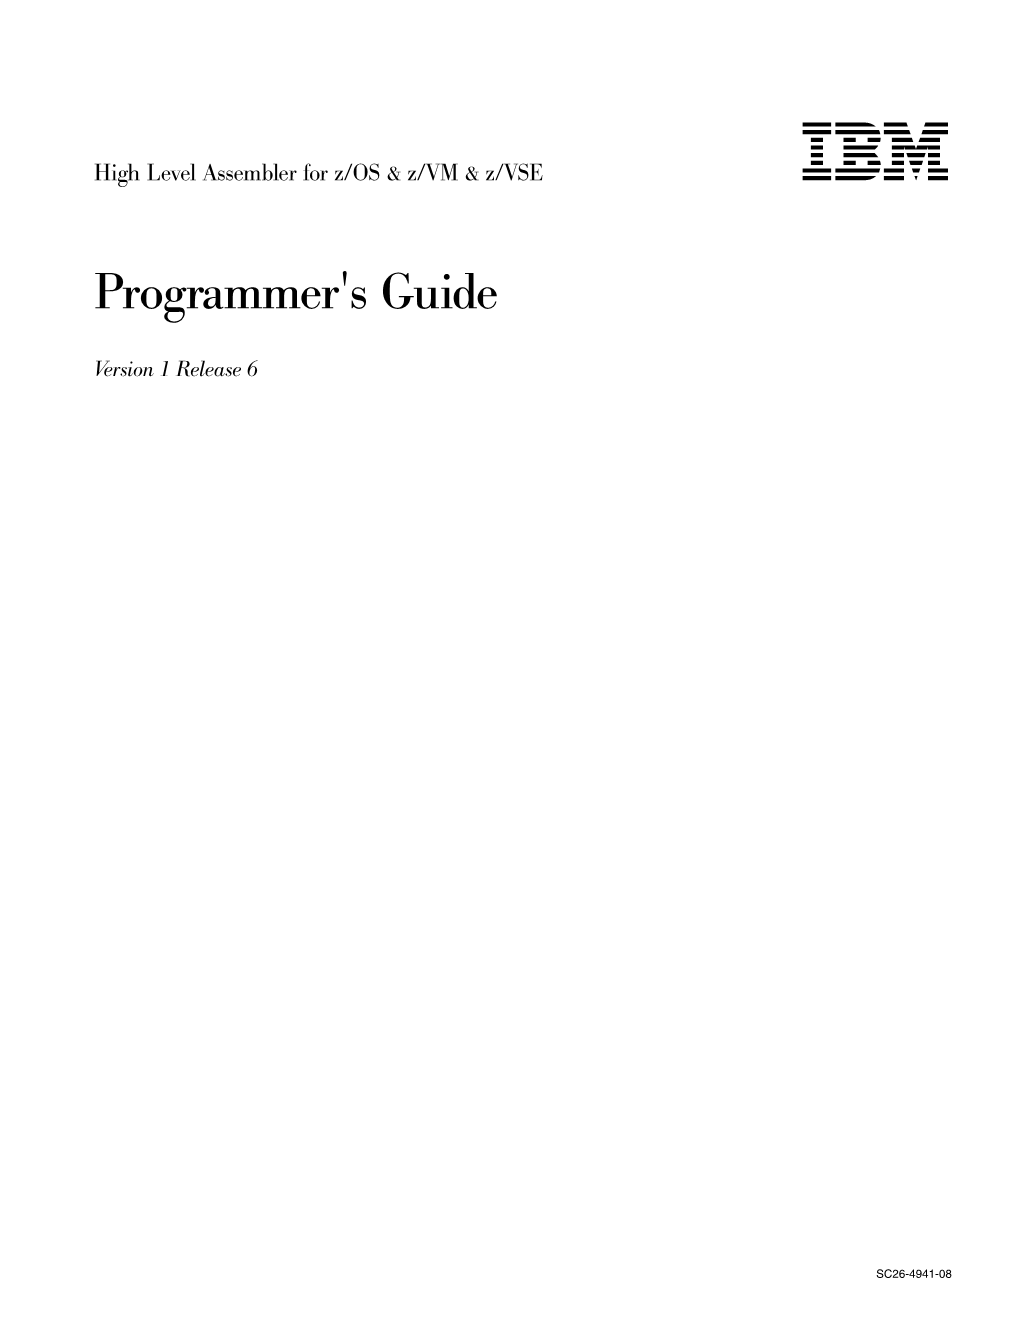 HLASM V1R6 Programmer's Guide Running Your Assembled Program on TSO